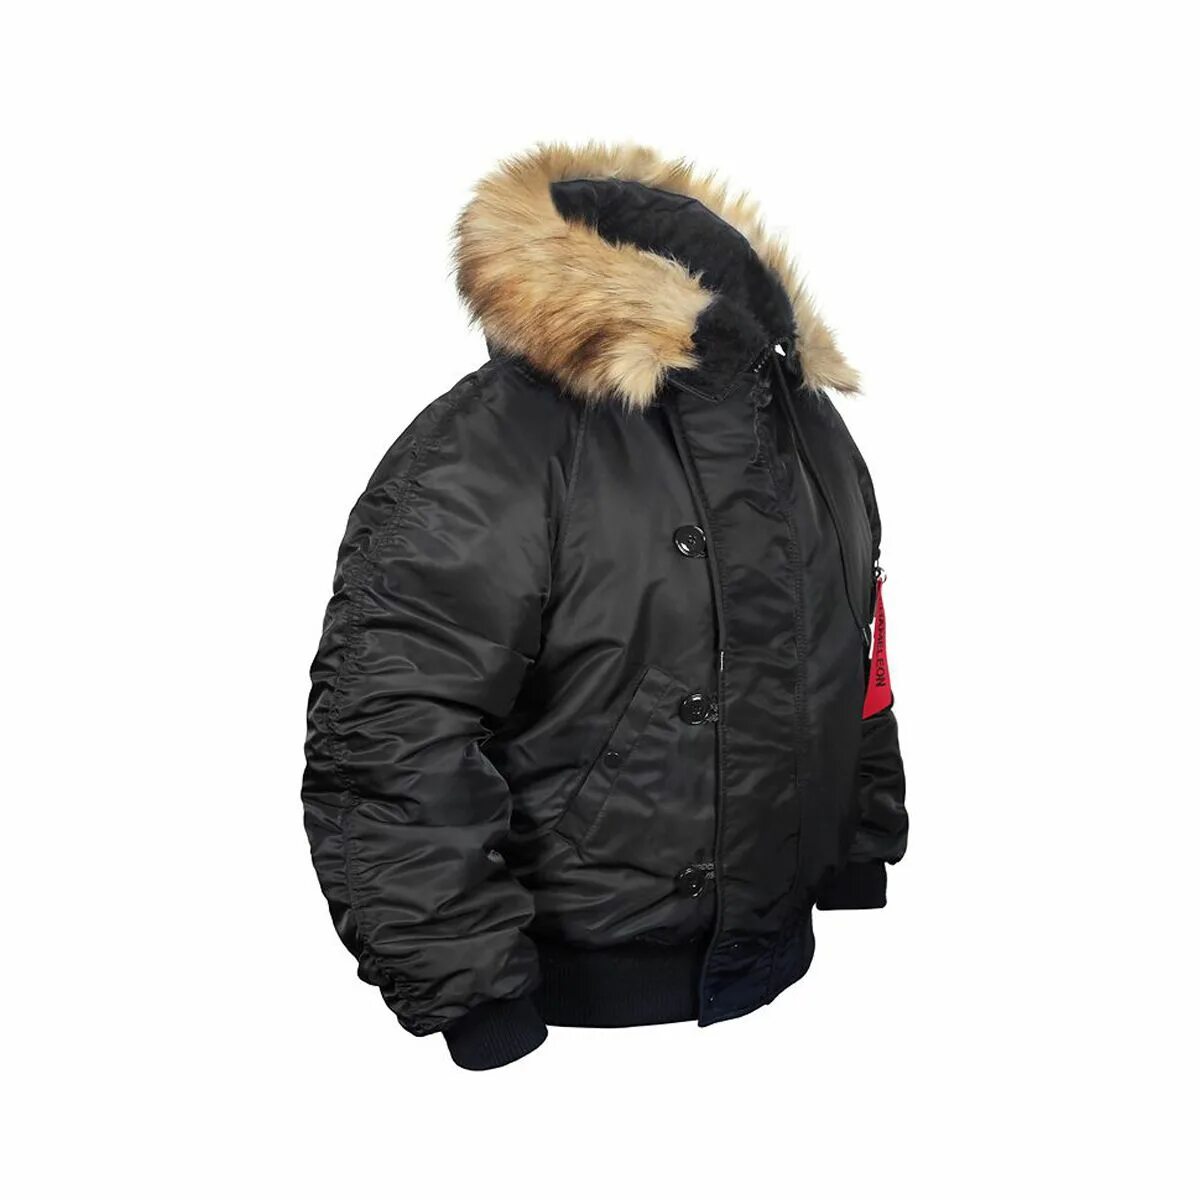 Короткую аляску. Куртка Аляска укороченная n-2b. Куртка Аляска Nordland. Куртка Милтек Аляска мужская. Куртка Аляска укороченная n-2b Black.